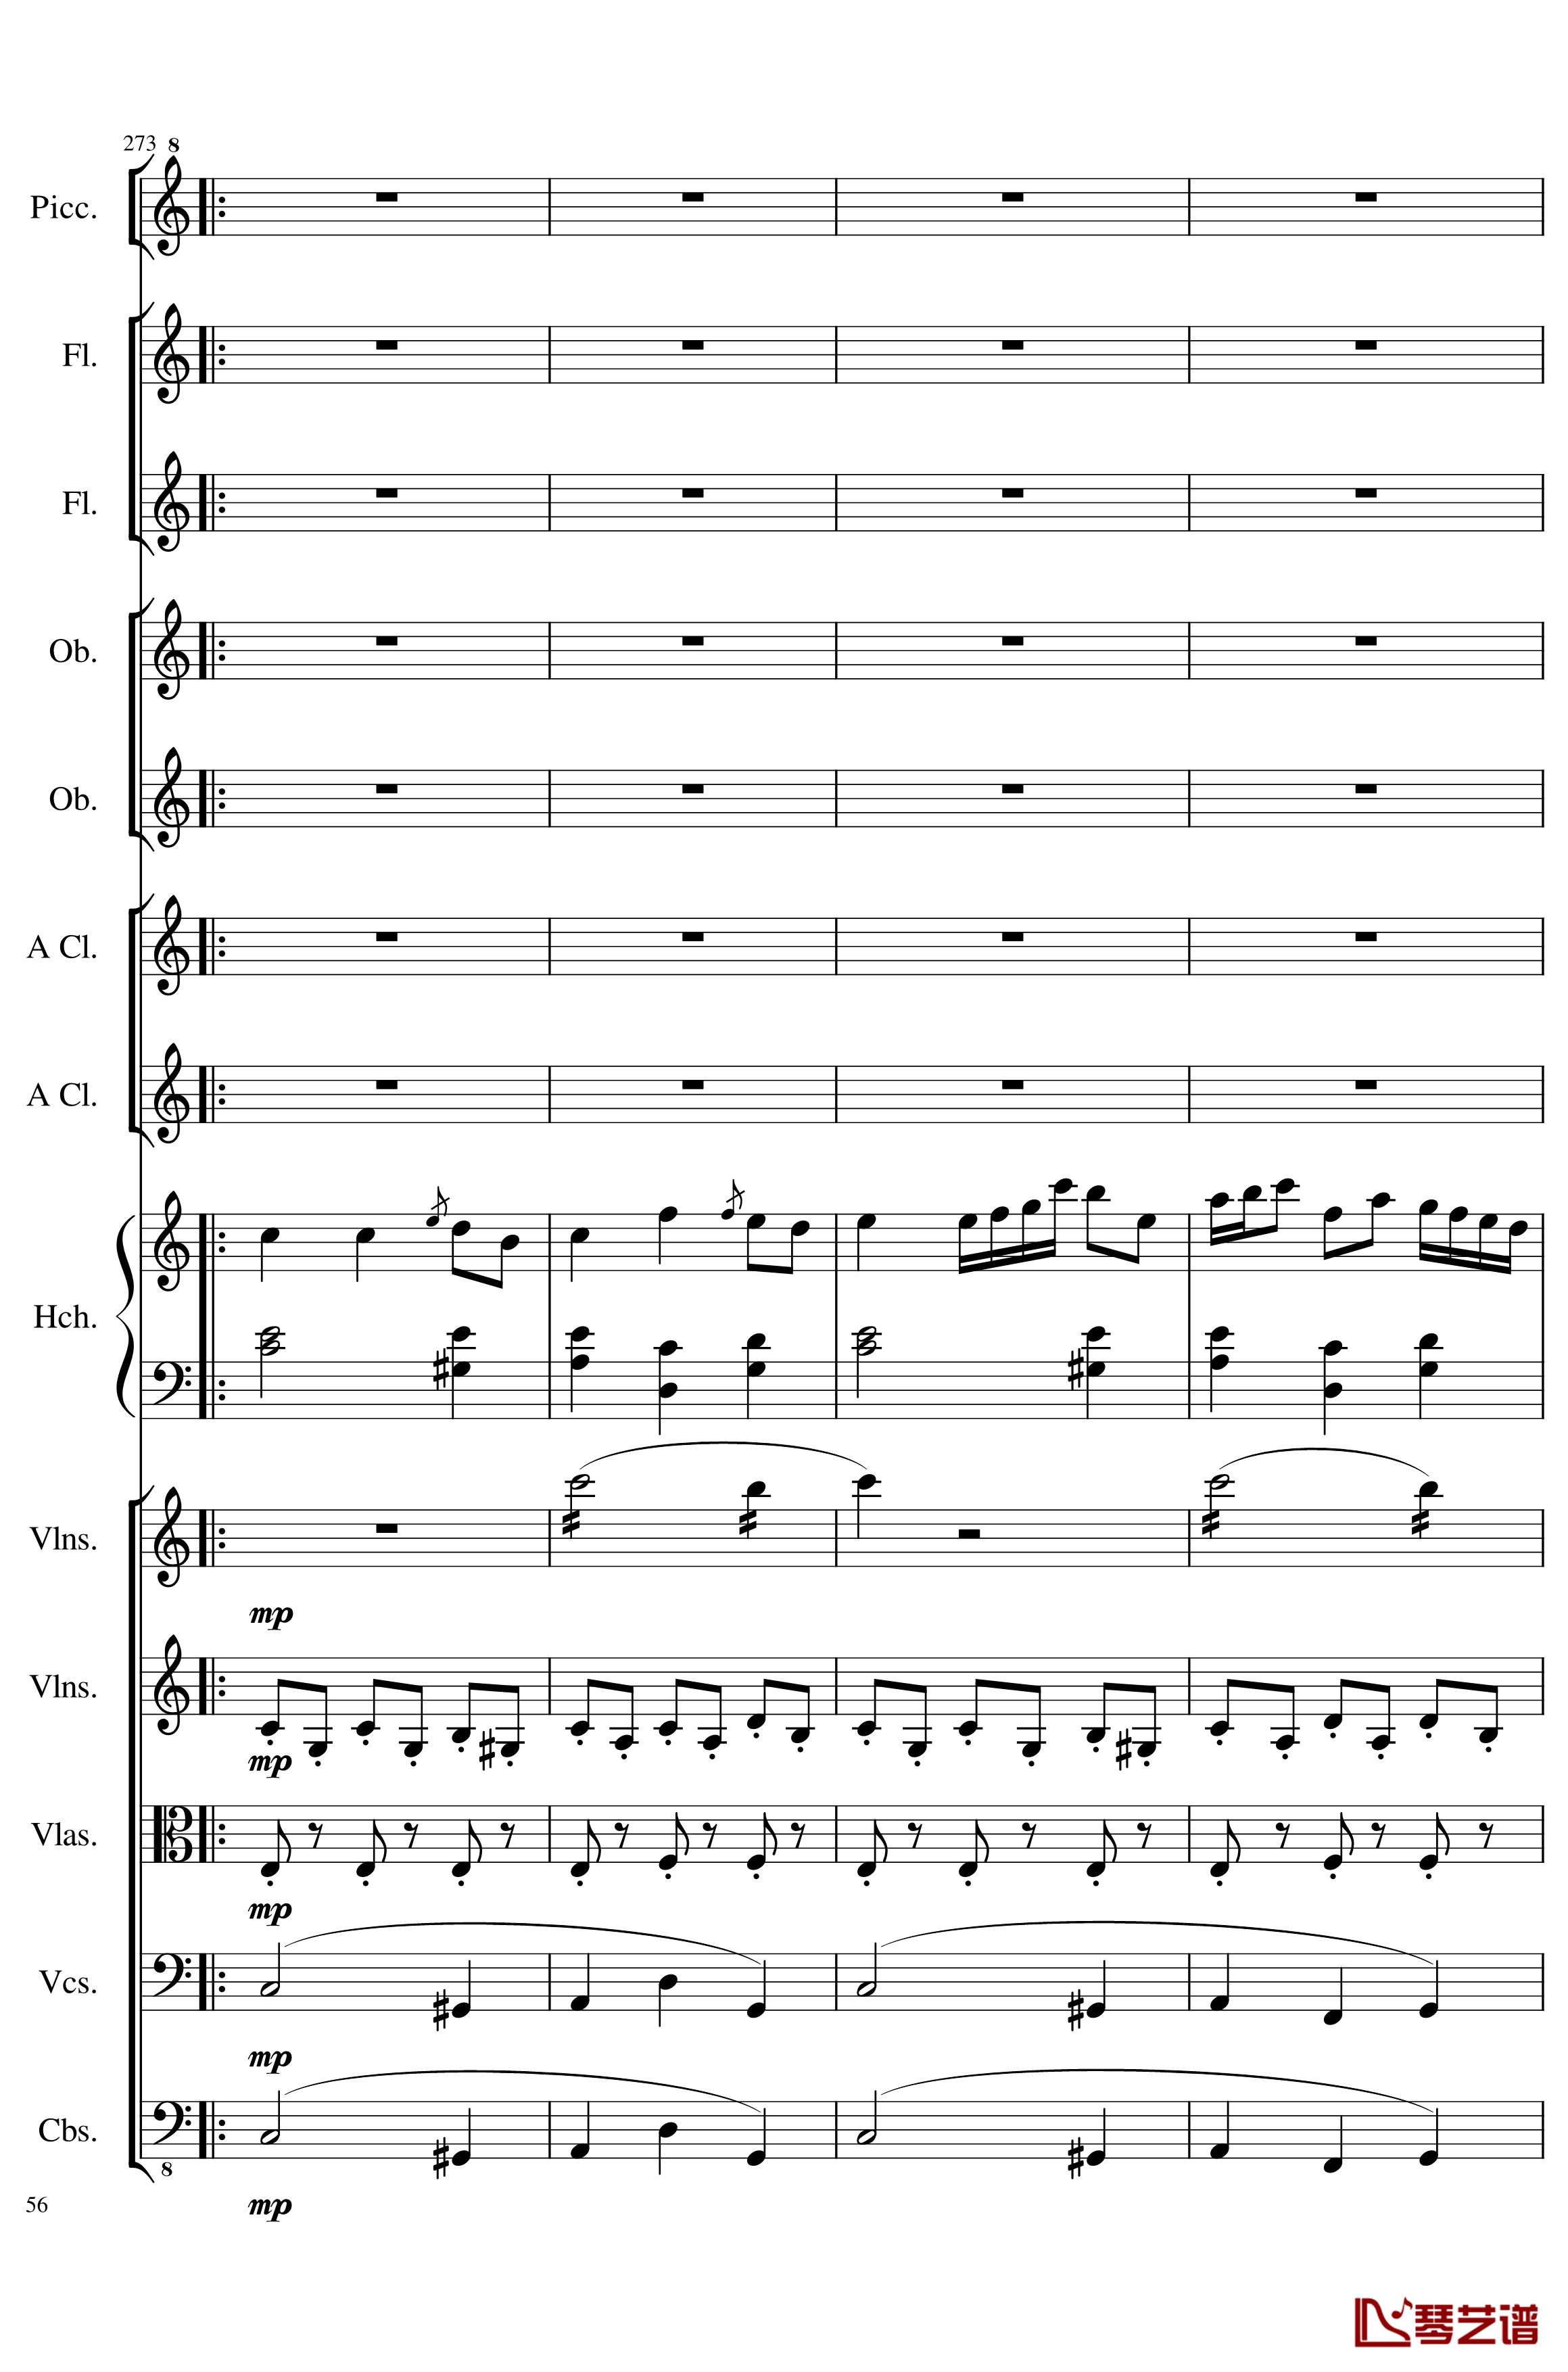 7 Contredanses No.1-7, Op.124钢琴谱-7首乡村舞曲，第一至第七，作品124-一个球56